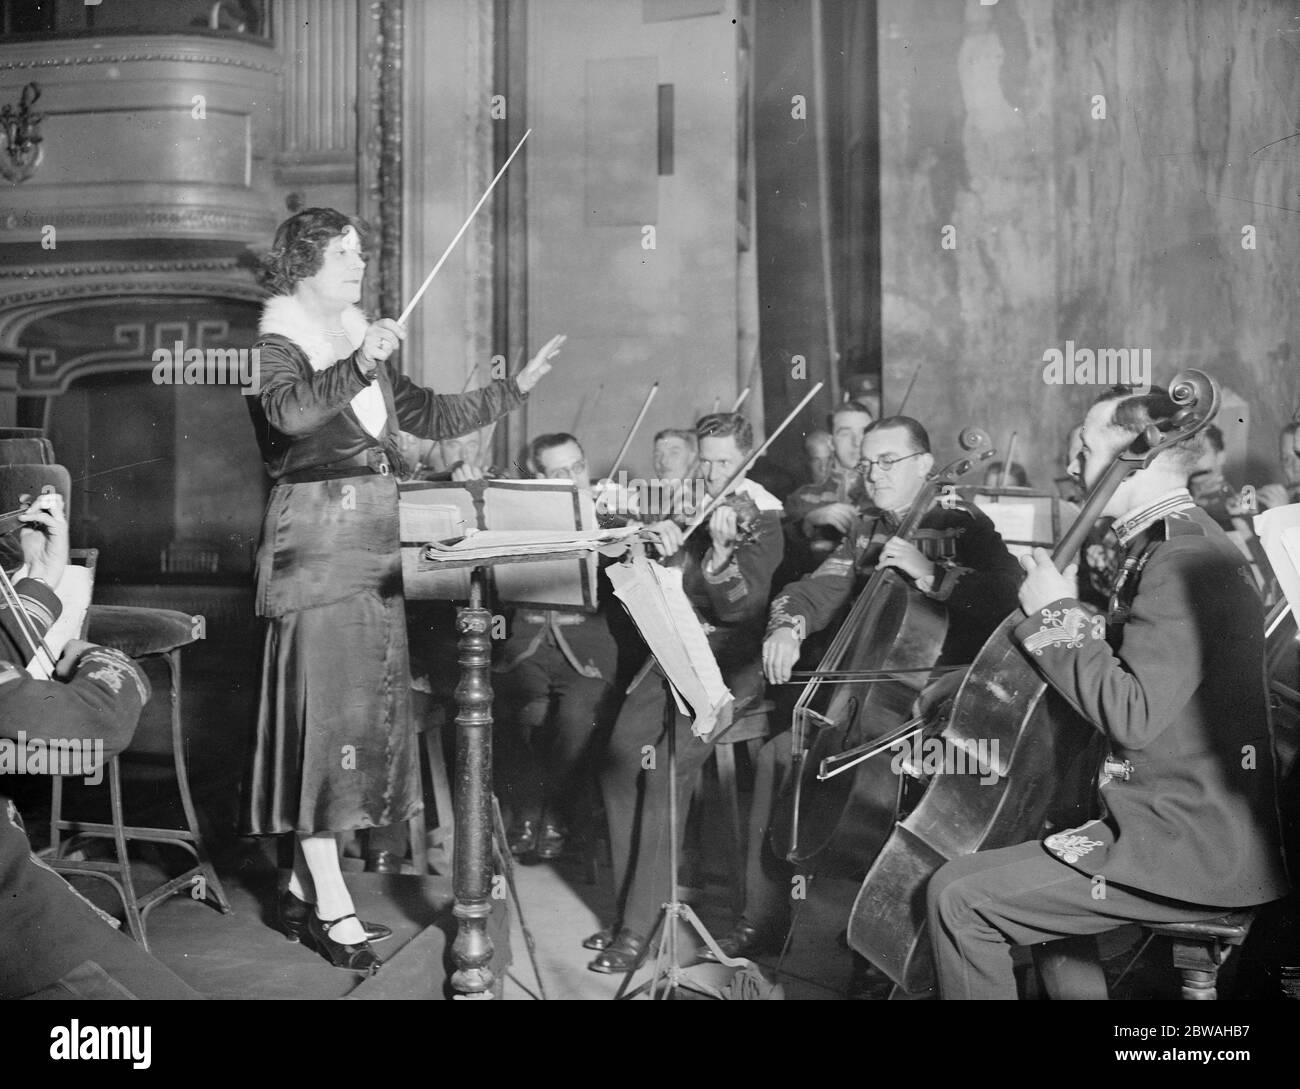 Les femmes font une répétition de la bande militaire Miss Susan Spain Dunk avec la bande de l'Artillerie royale au théâtre de l'Académie royale Woolwich 10 mars 1932 Banque D'Images